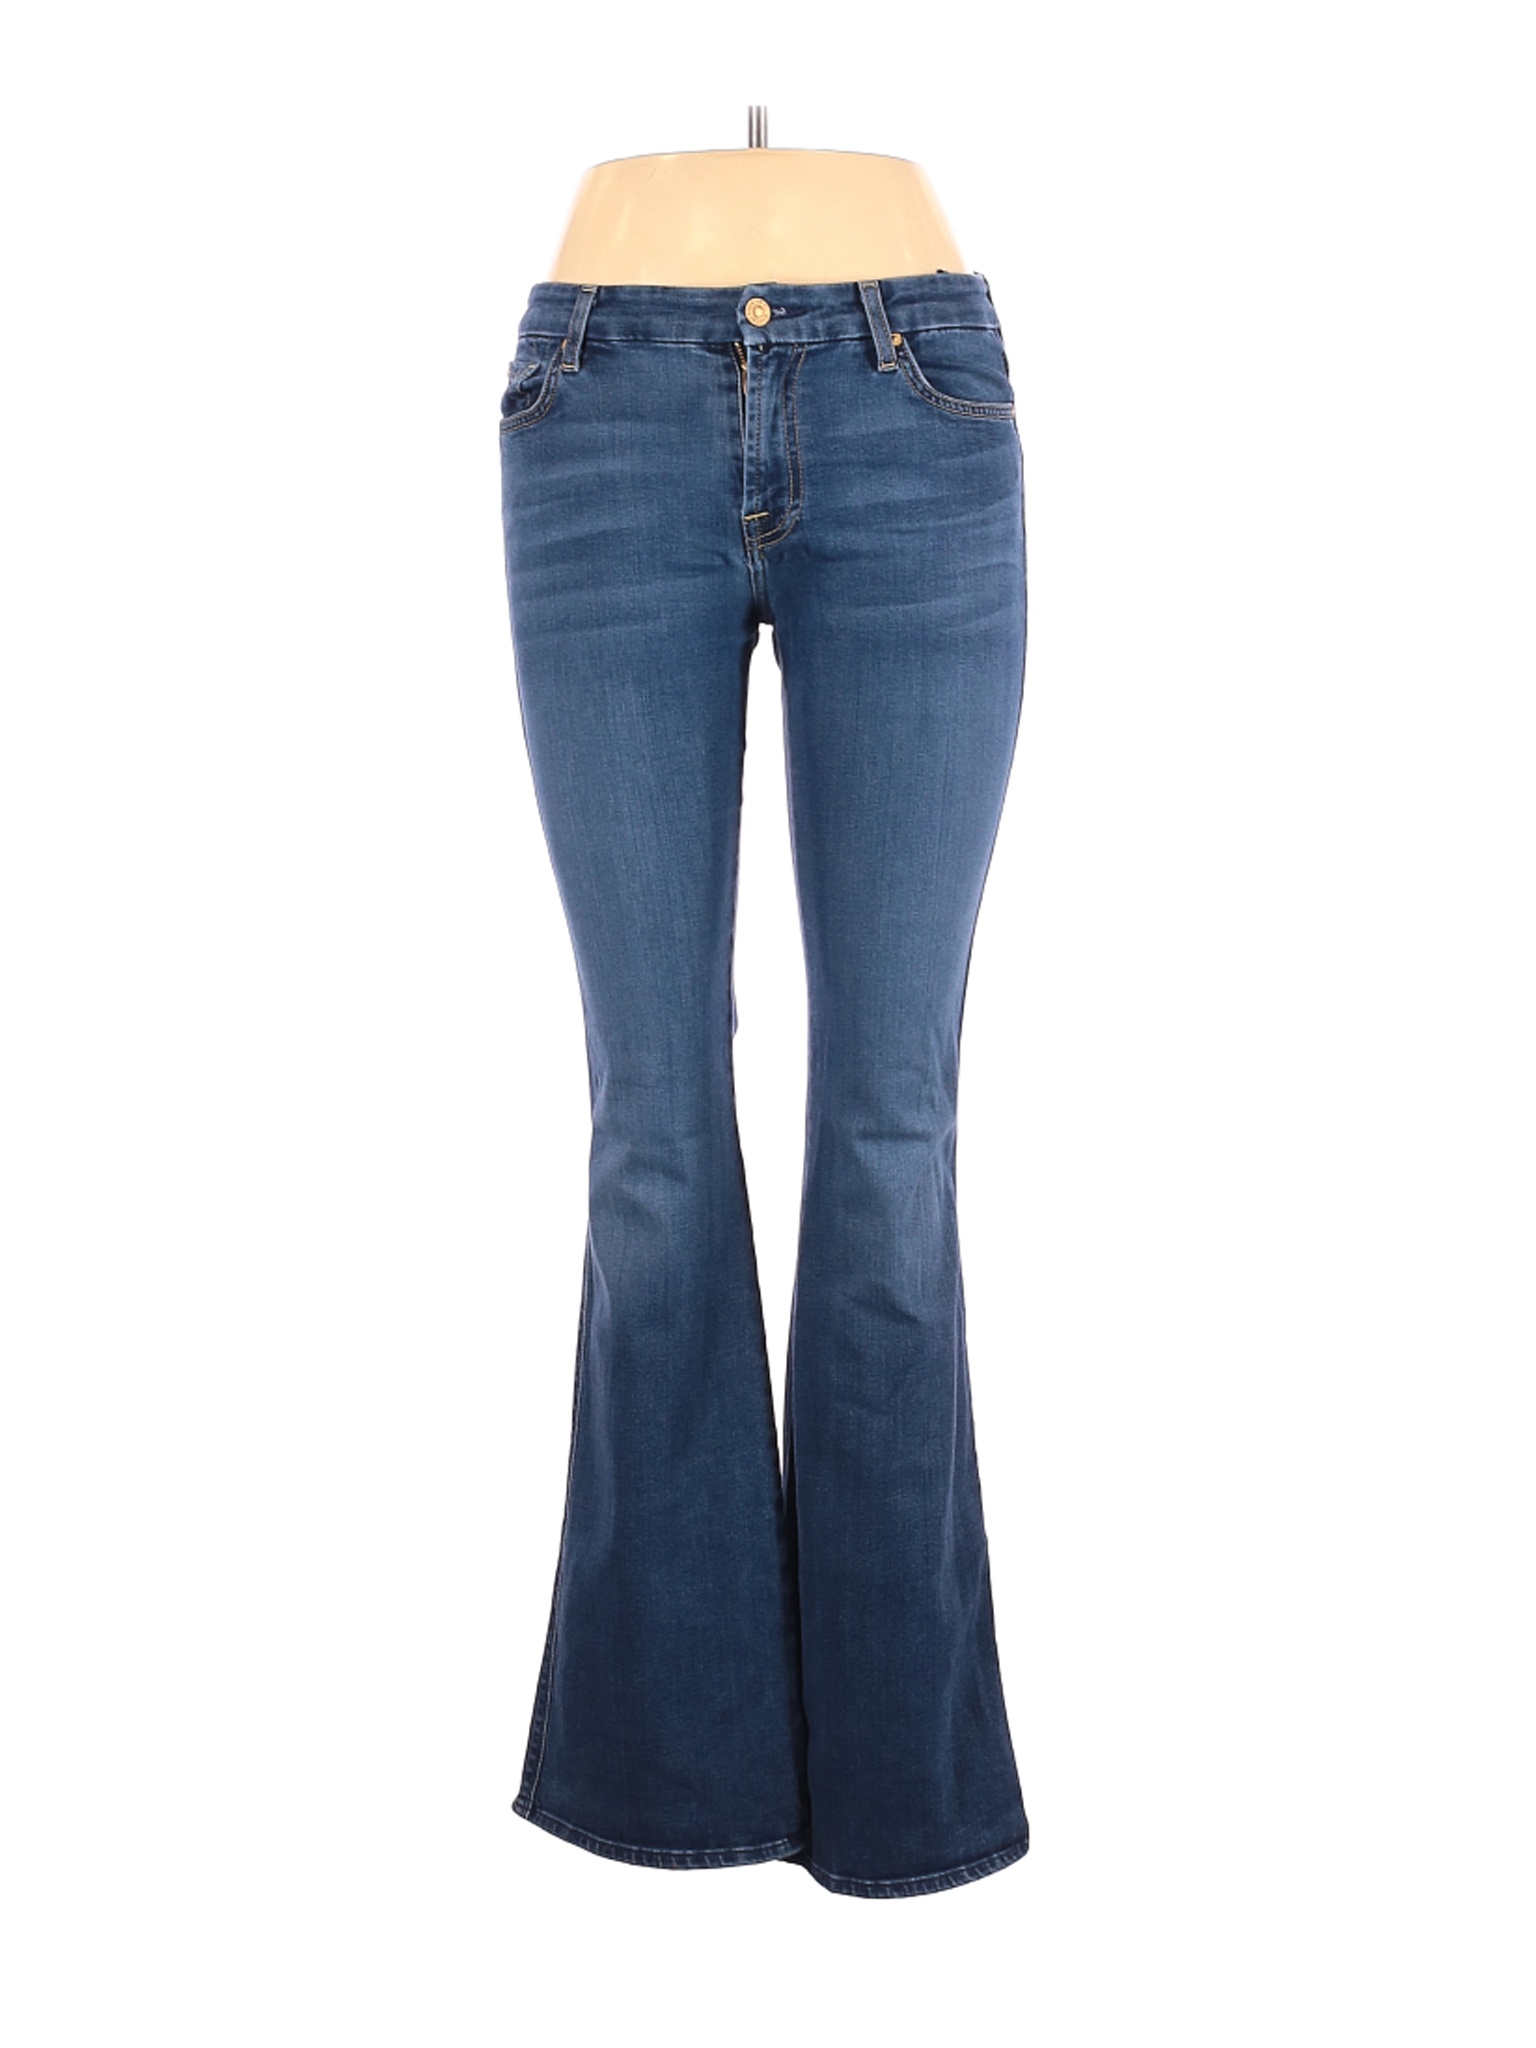 Alaïa X 7 For All Mankind Women Blue Jeans 29W | eBay